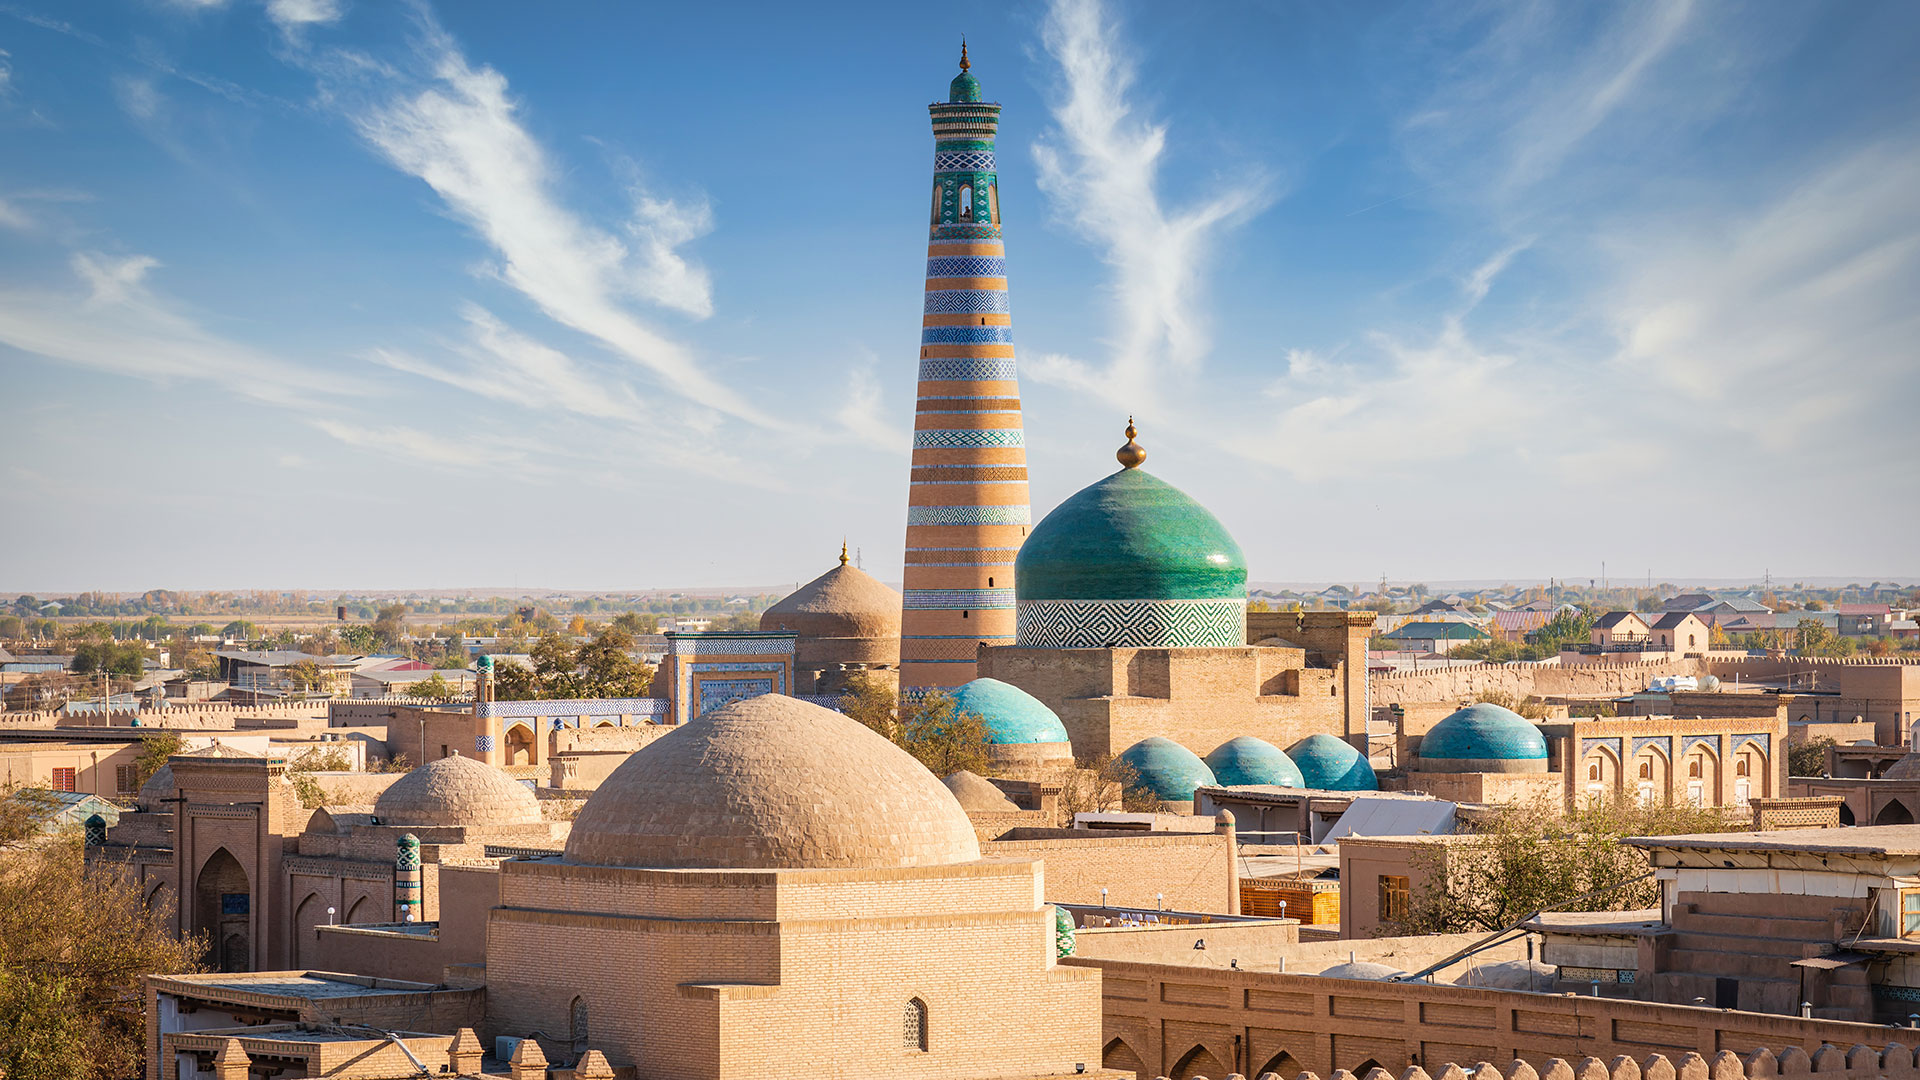 View over Khiva, Uzbekistan